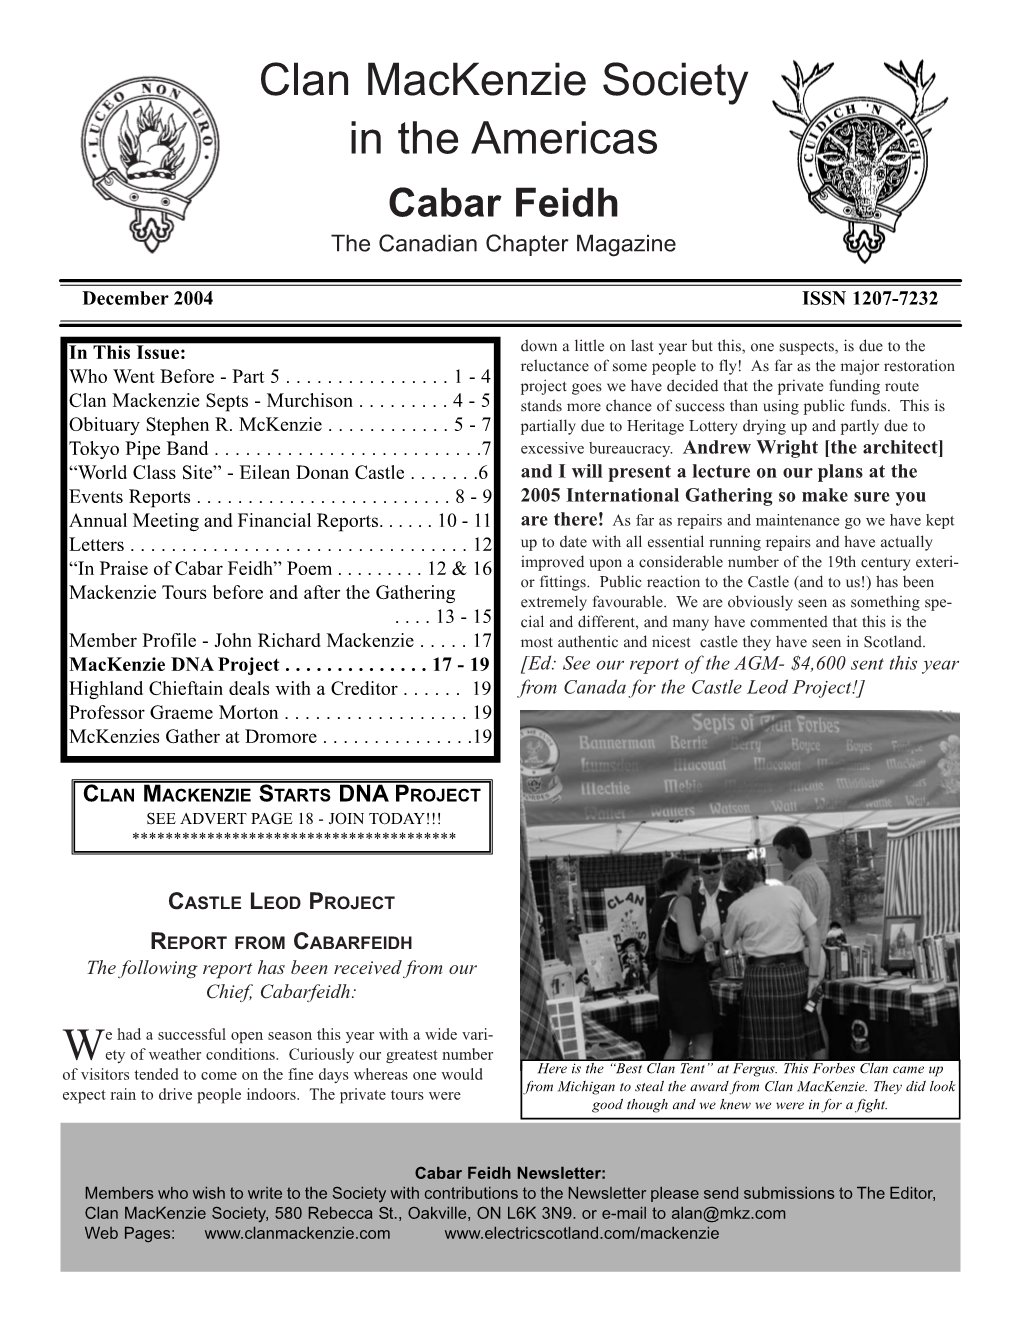 December 2004 Newsletter